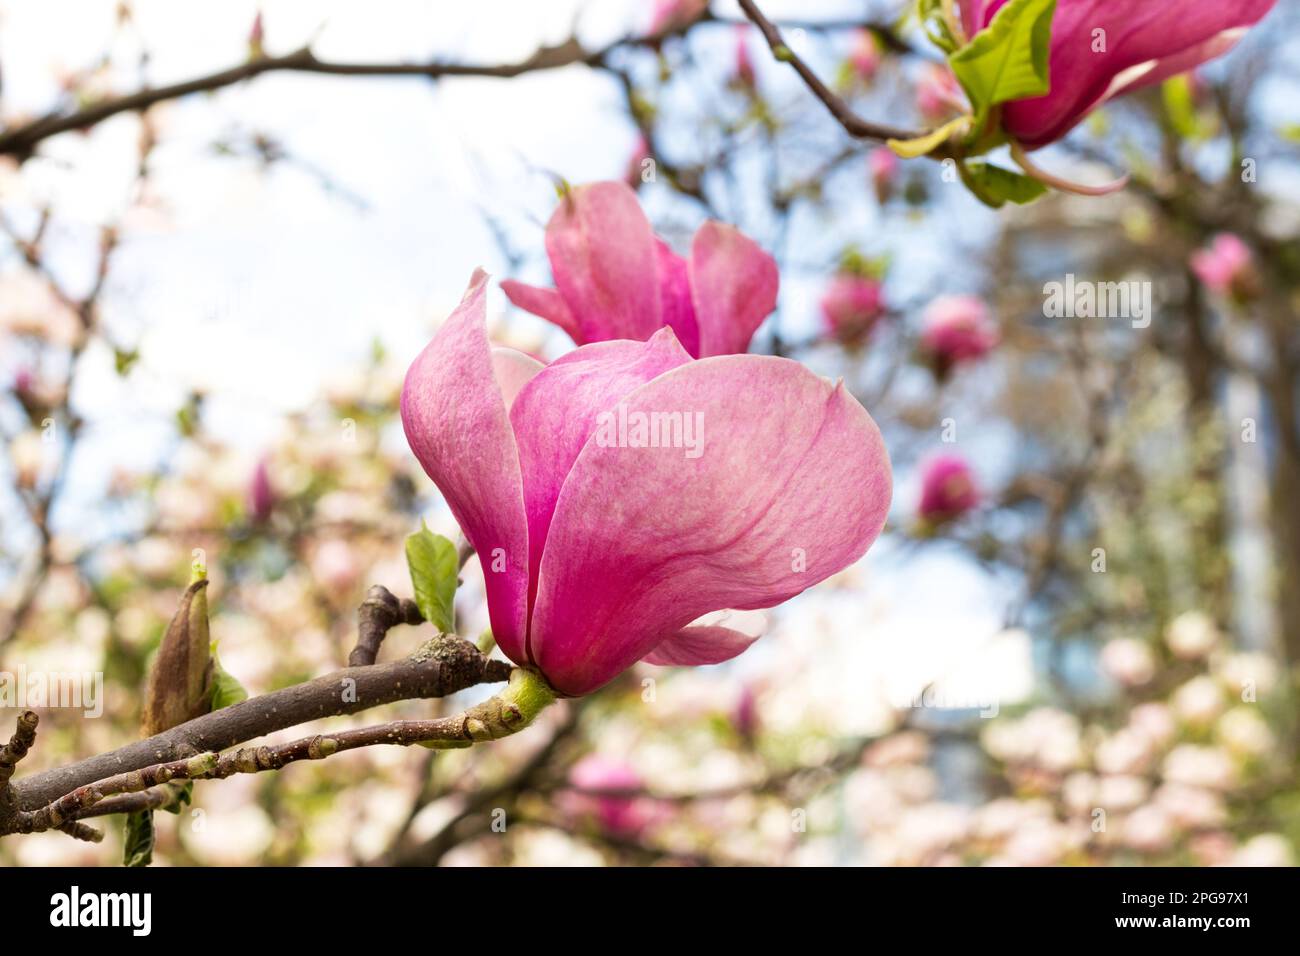 Magnifique fleur rose magnolia le jour du printemps. Arbre fleuri dans le jardin Banque D'Images